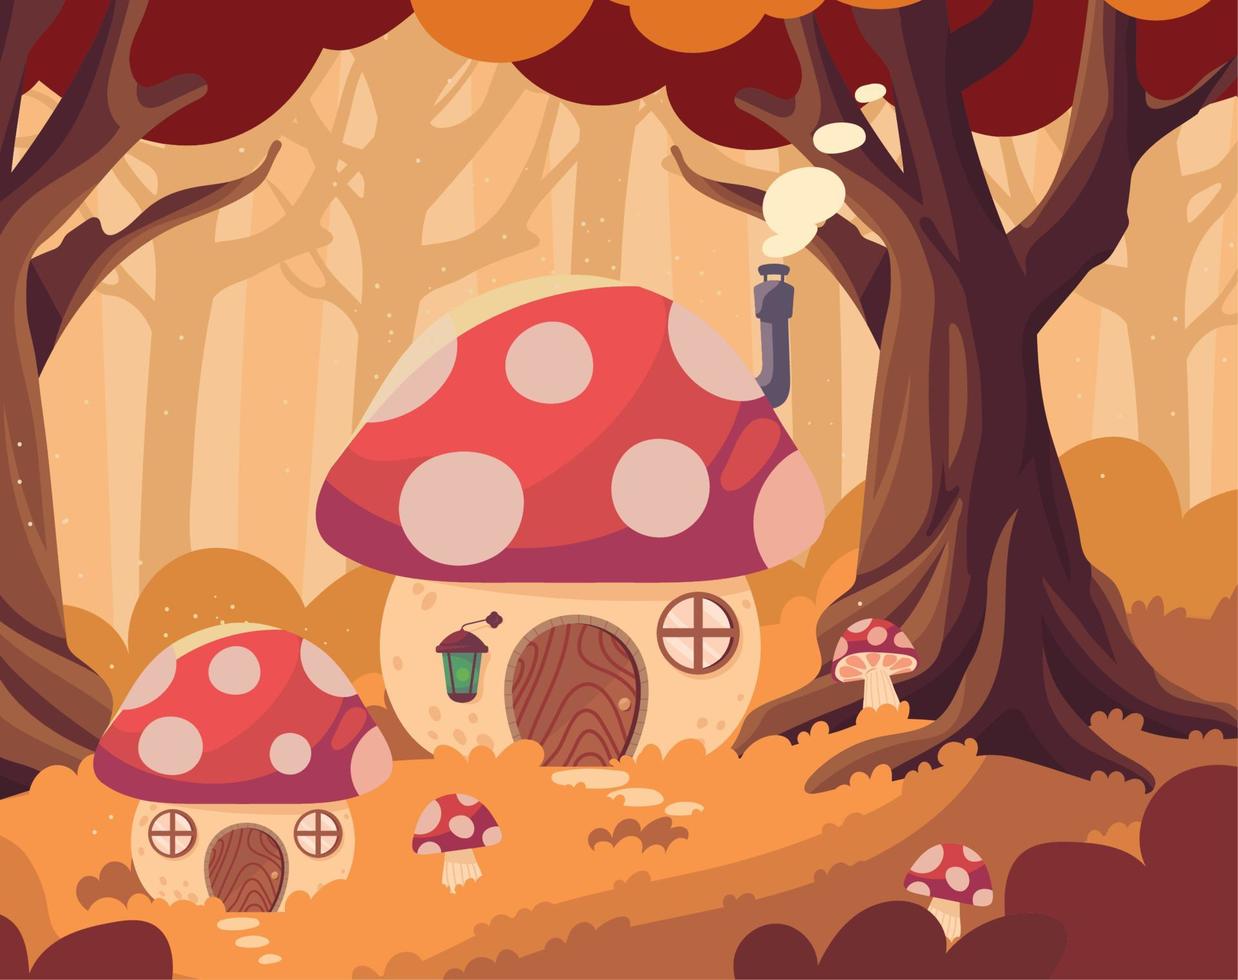 enchanted mushroom shape houses vector